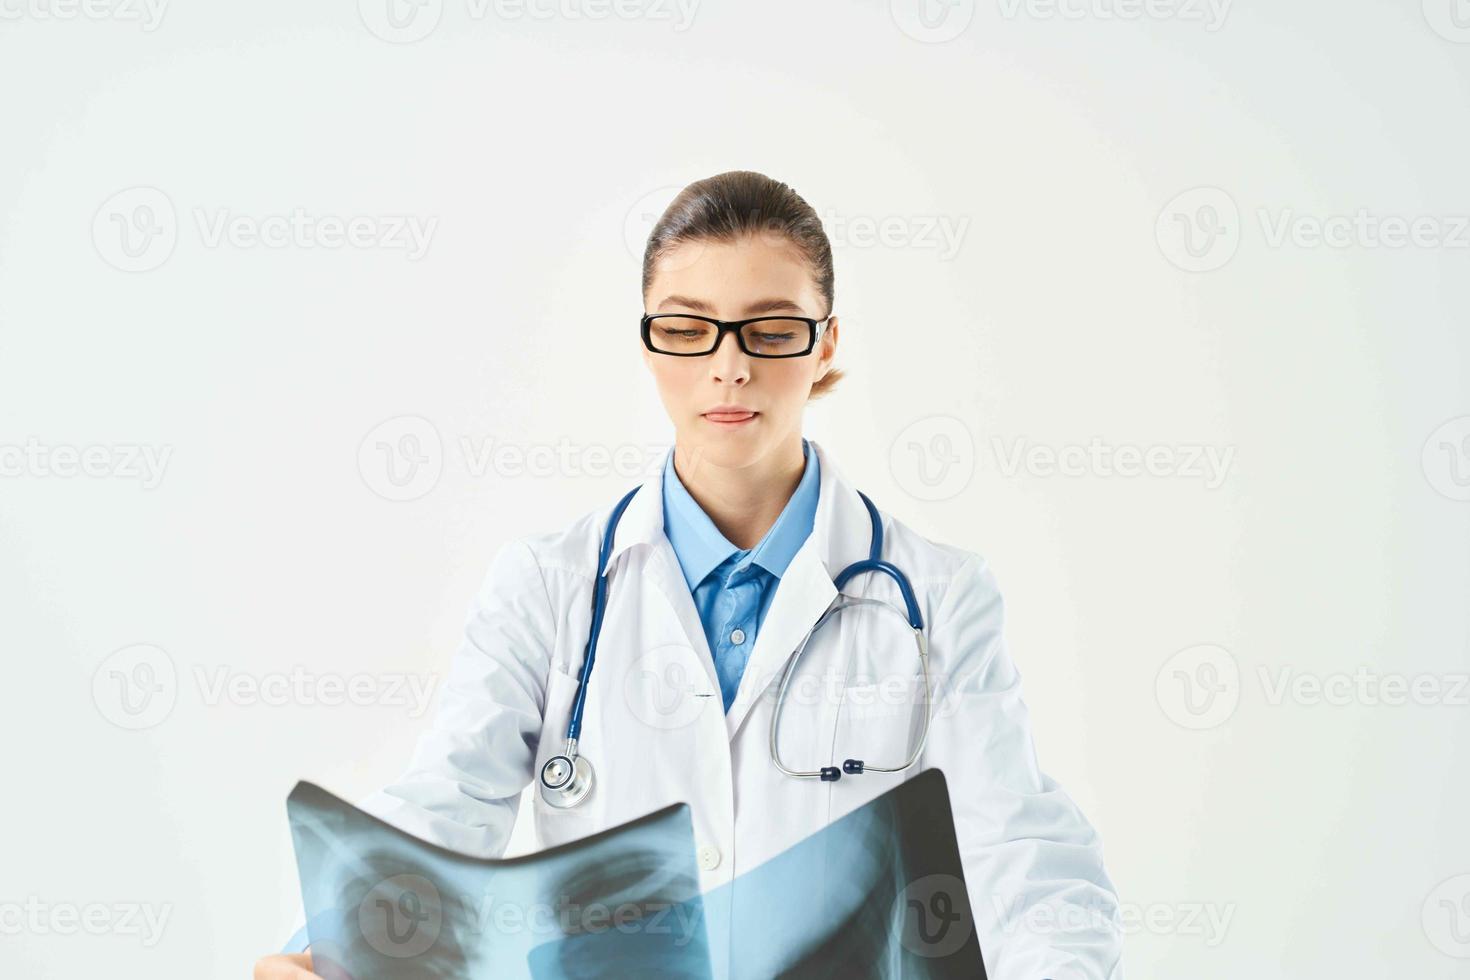 mujer radiólogo rayos X examen profesionales diagnósticos foto